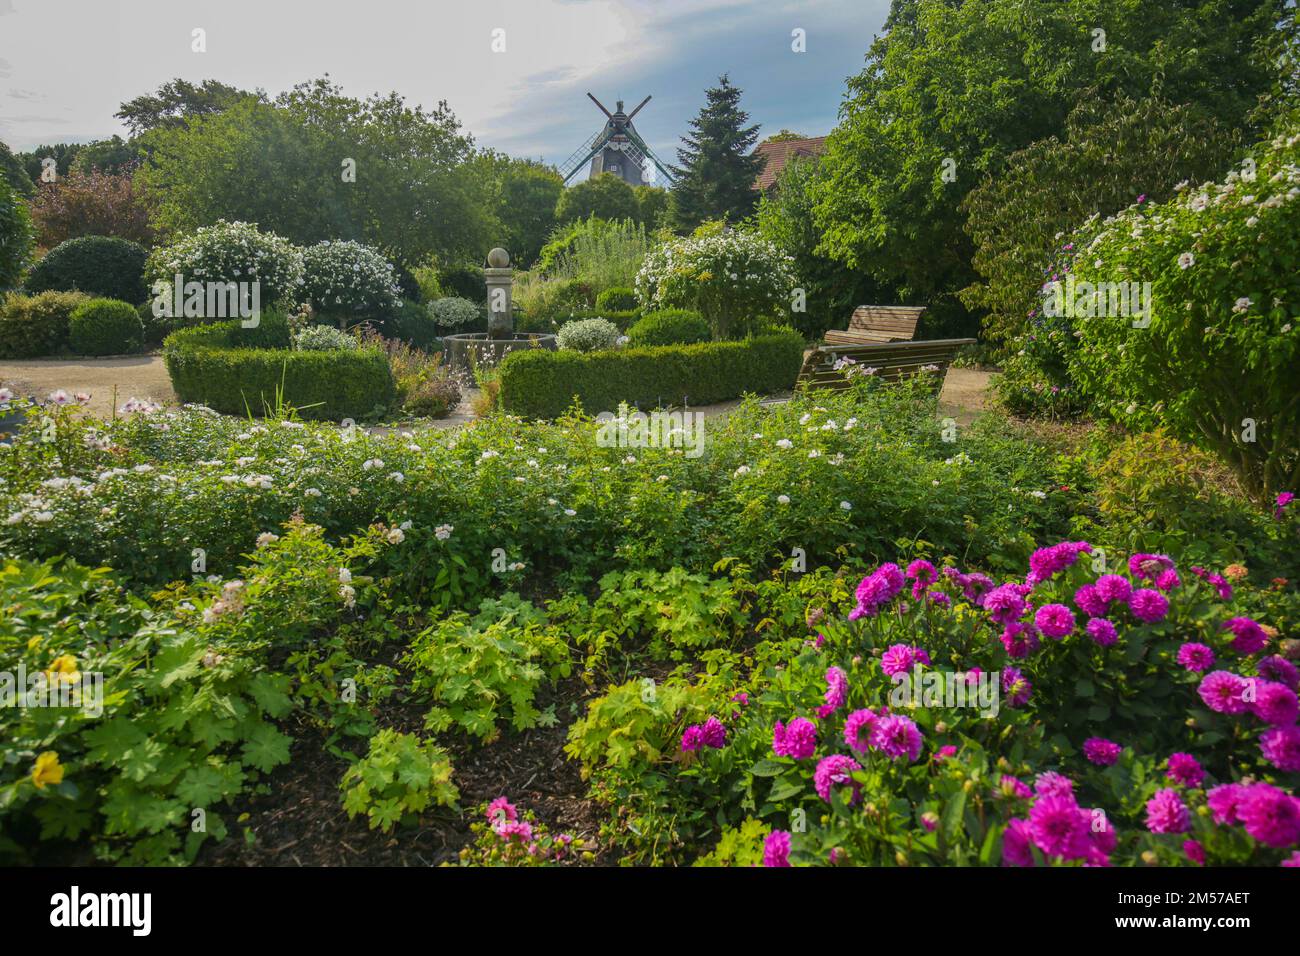 dahlia-Blumen in einem wunderschönen Park. park mit wunderschöner Aussicht. Dahlia-Blumen in einem sonnigen Park. Blumenpark und Windmühle. Stockfoto